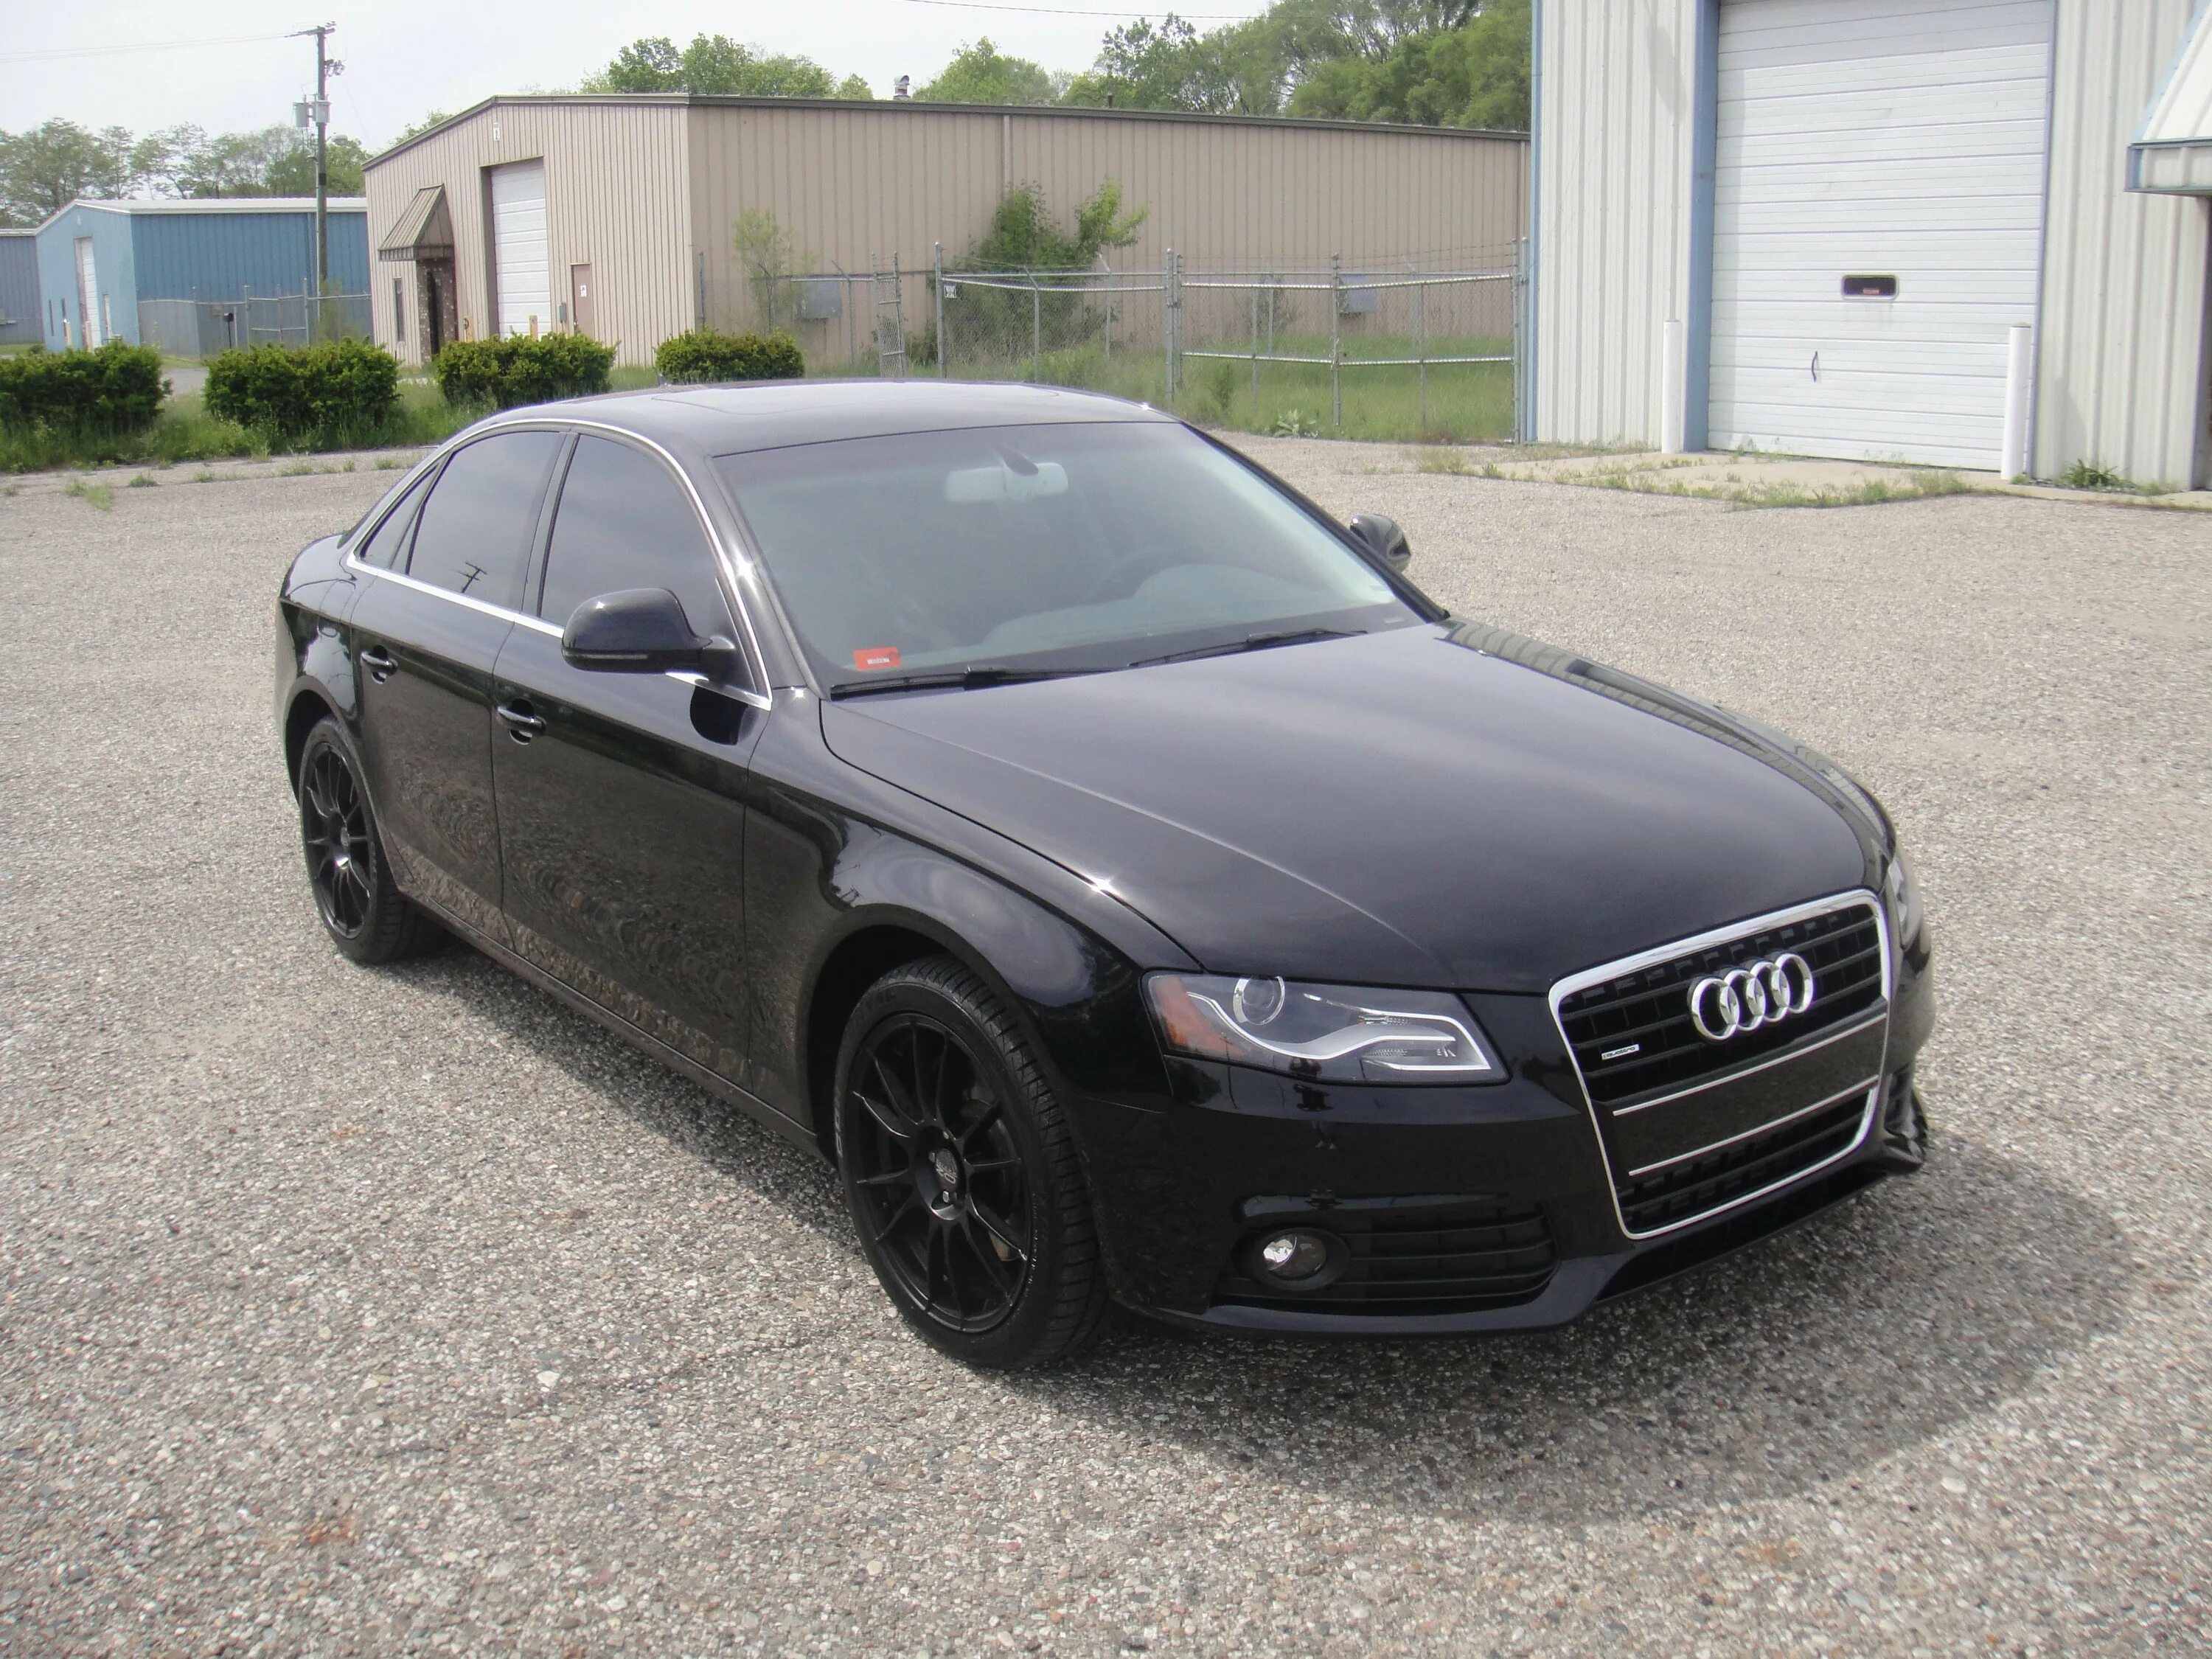 Audi a4 2009. Ауди а4 в8. Ауди а4 2009. Audi a4 b8 2010 Black.